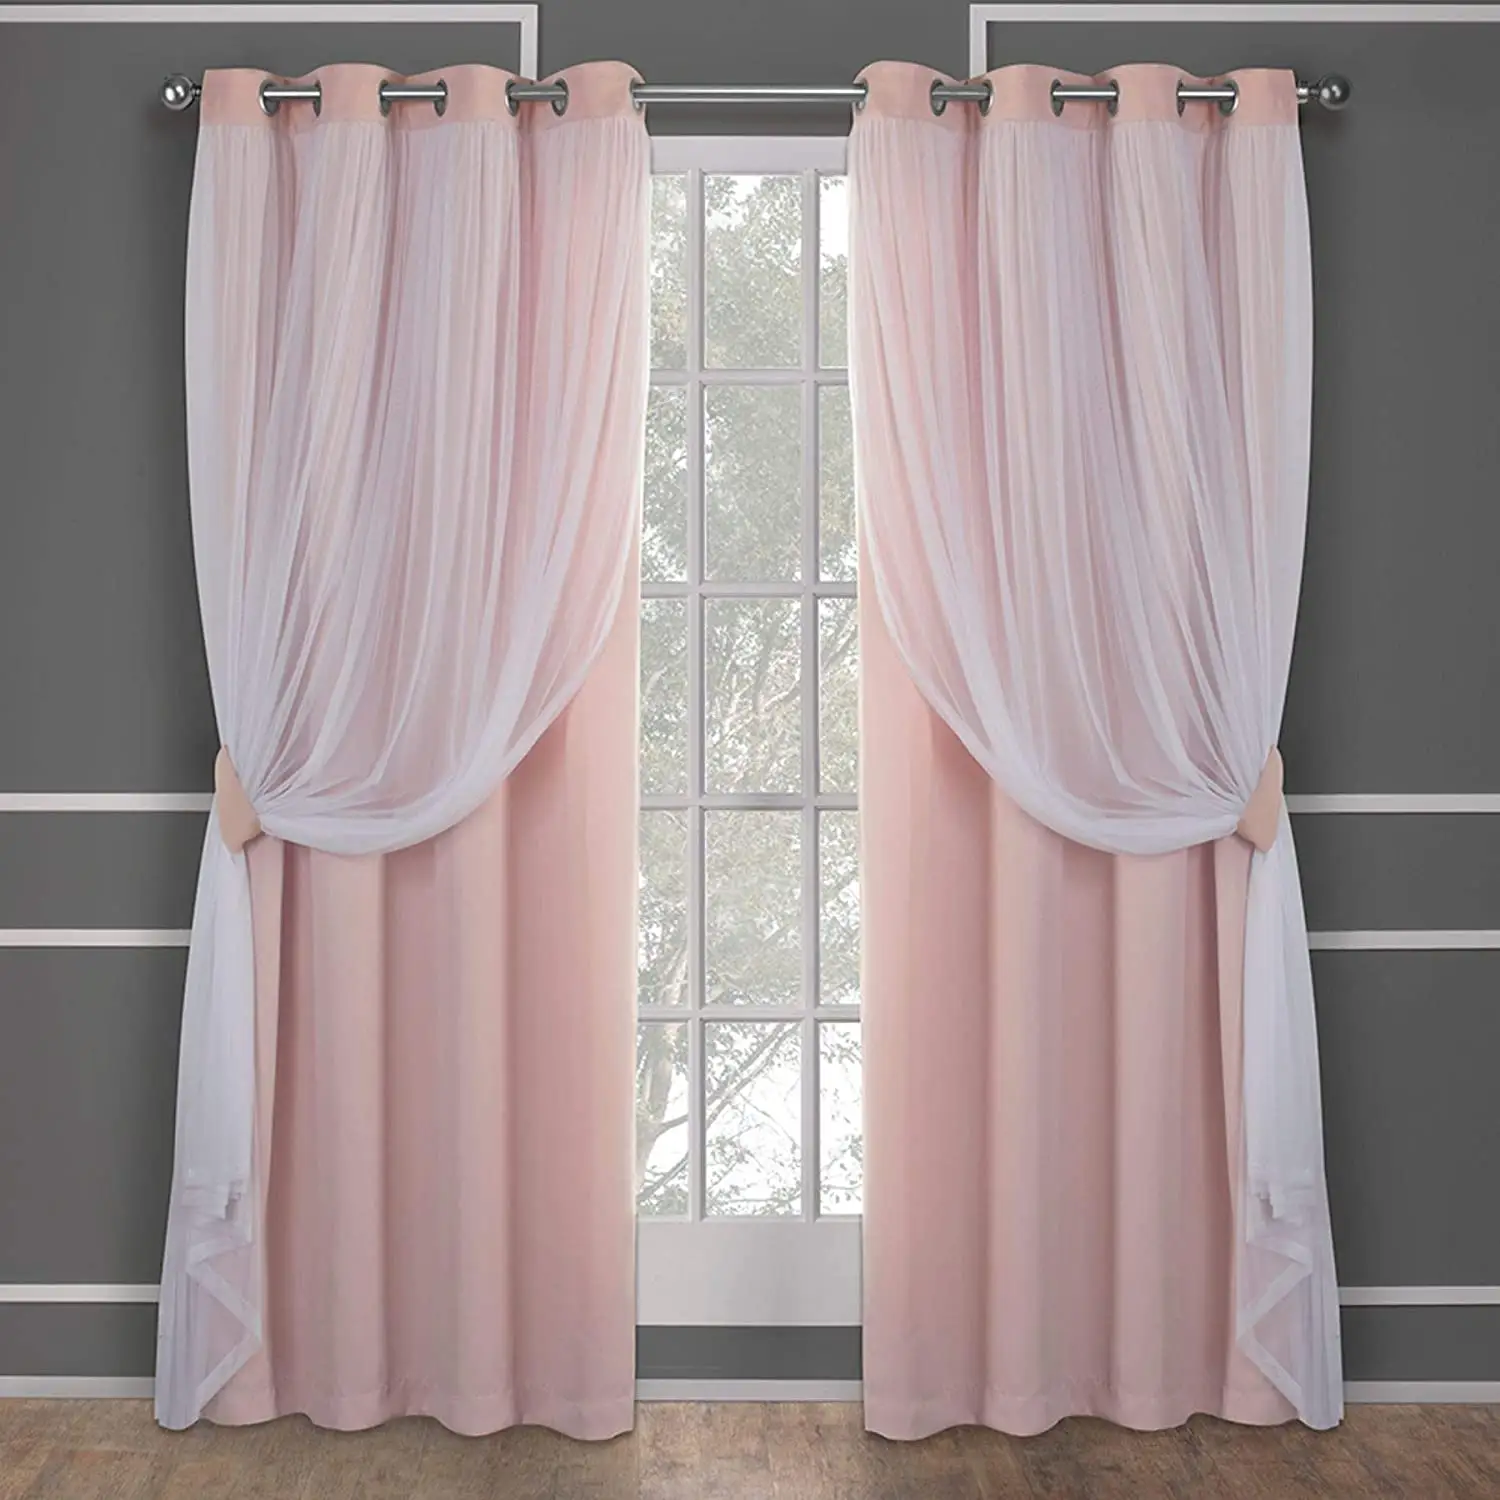 Cortinas opacas con revestimiento transparente para niñas, cortinas opacas de color rosa que combinan con cortinas transparentes blancas, cortinas de oscurecimiento para habitación elegante